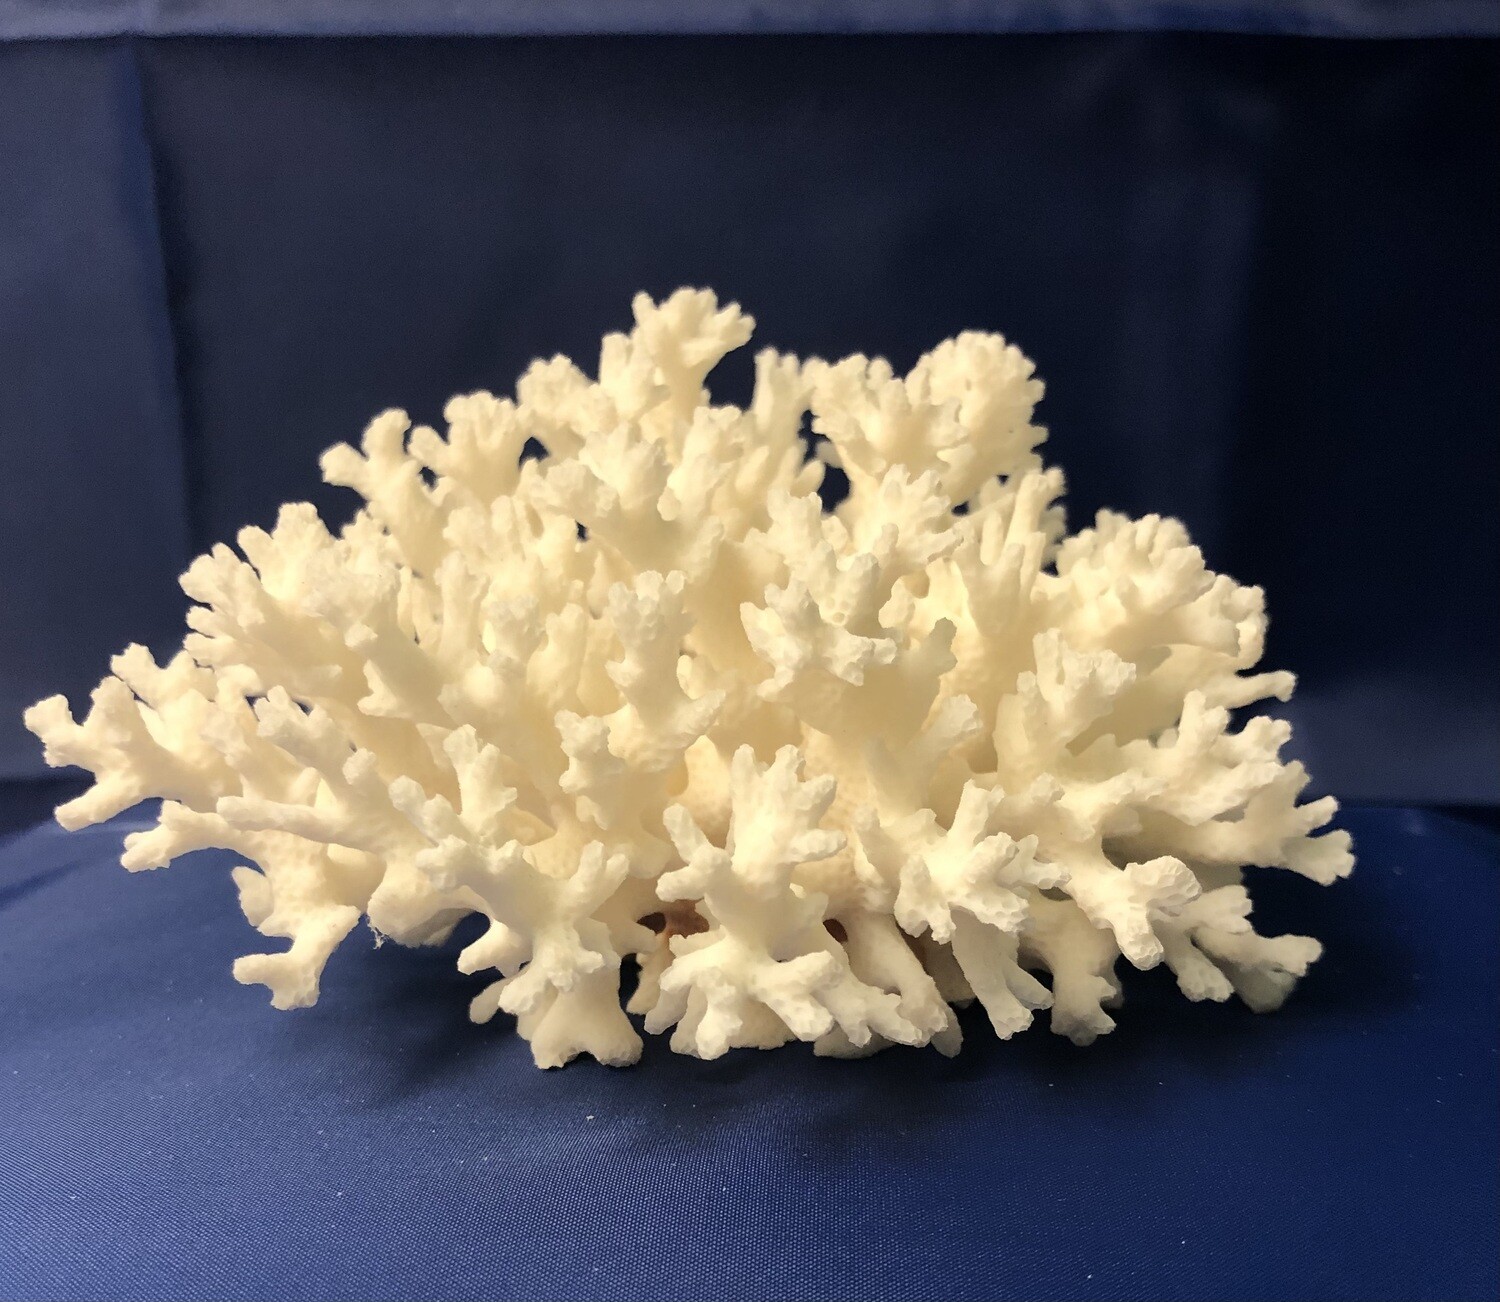 Lace Coral Specimen (5 x 4.5 x 3)